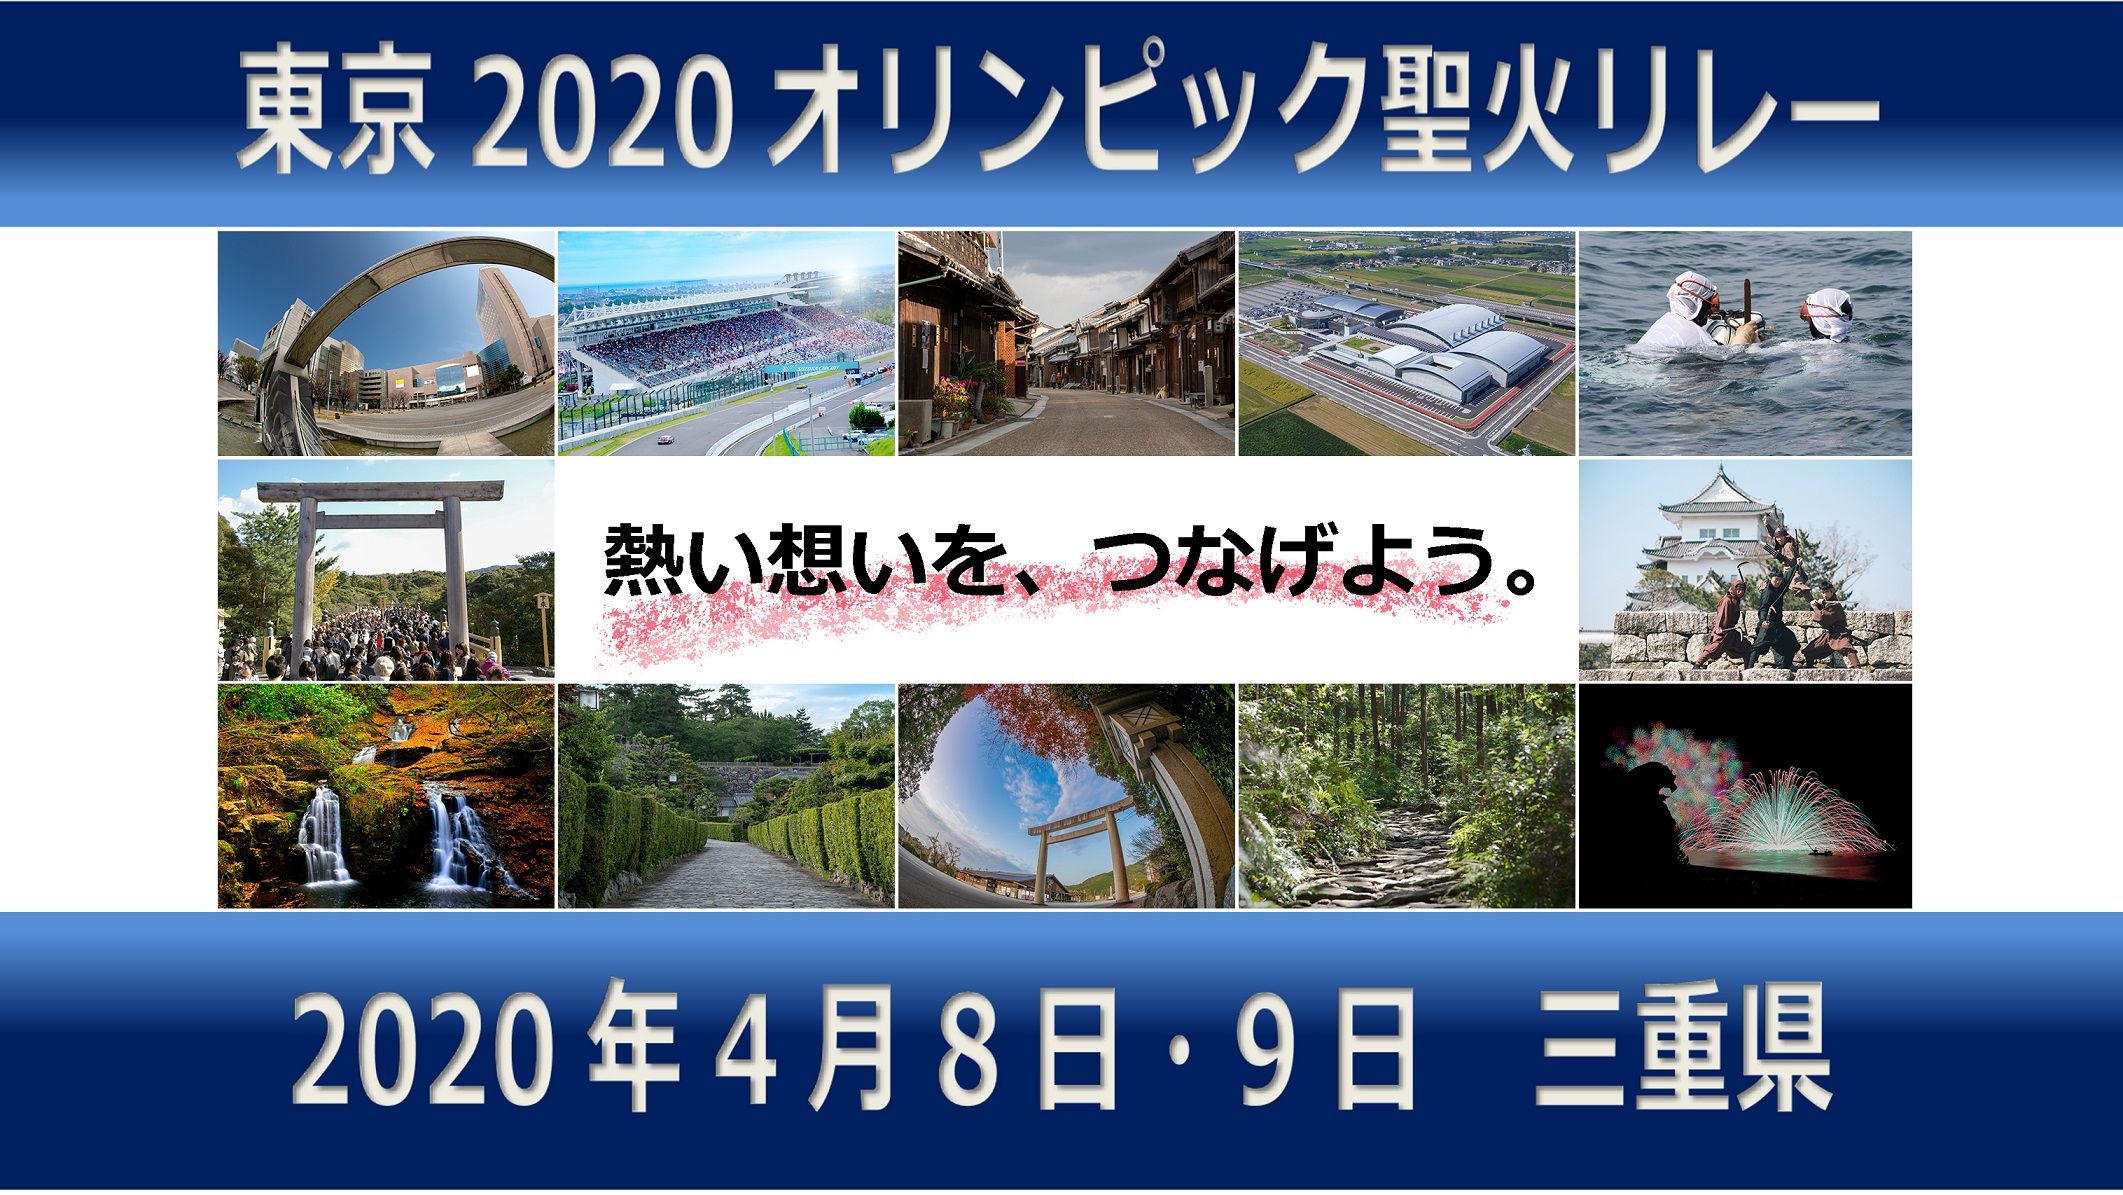 東京2020オリンピック聖火リレー 聖火ランナーコメント動画（三重県実行委員会公募枠ランナー29名）